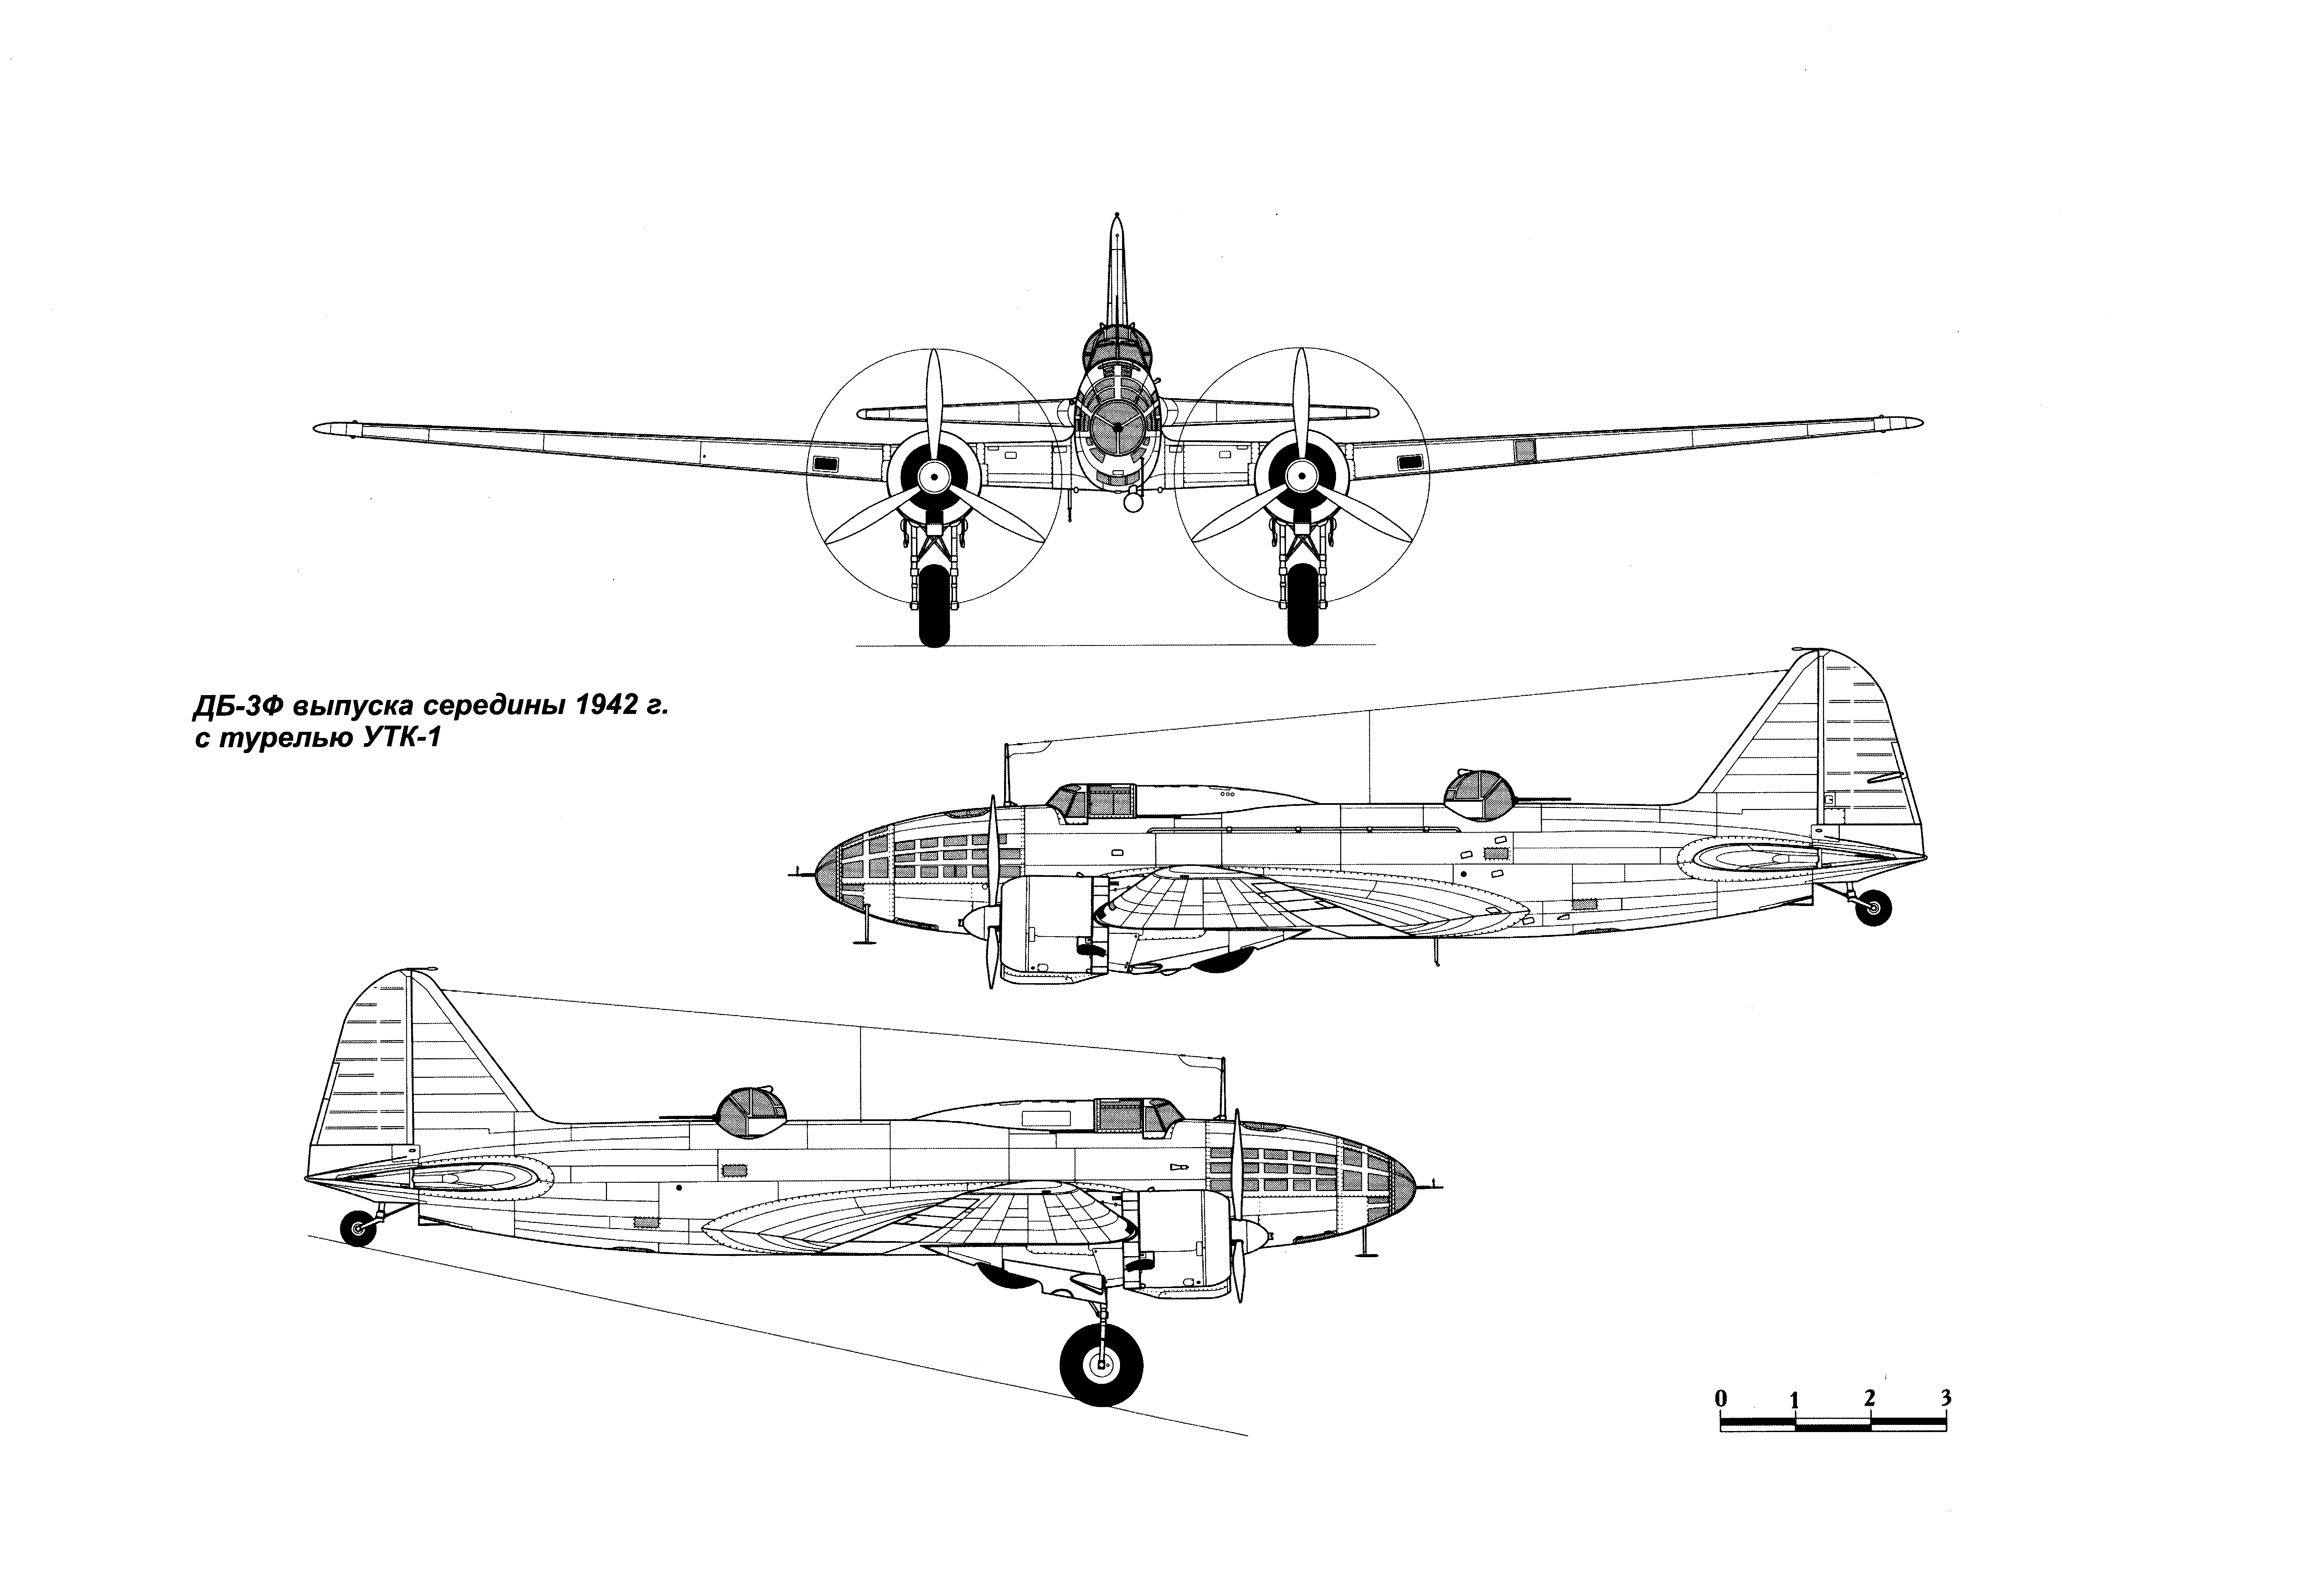 Ilyushin DB-3 blueprint